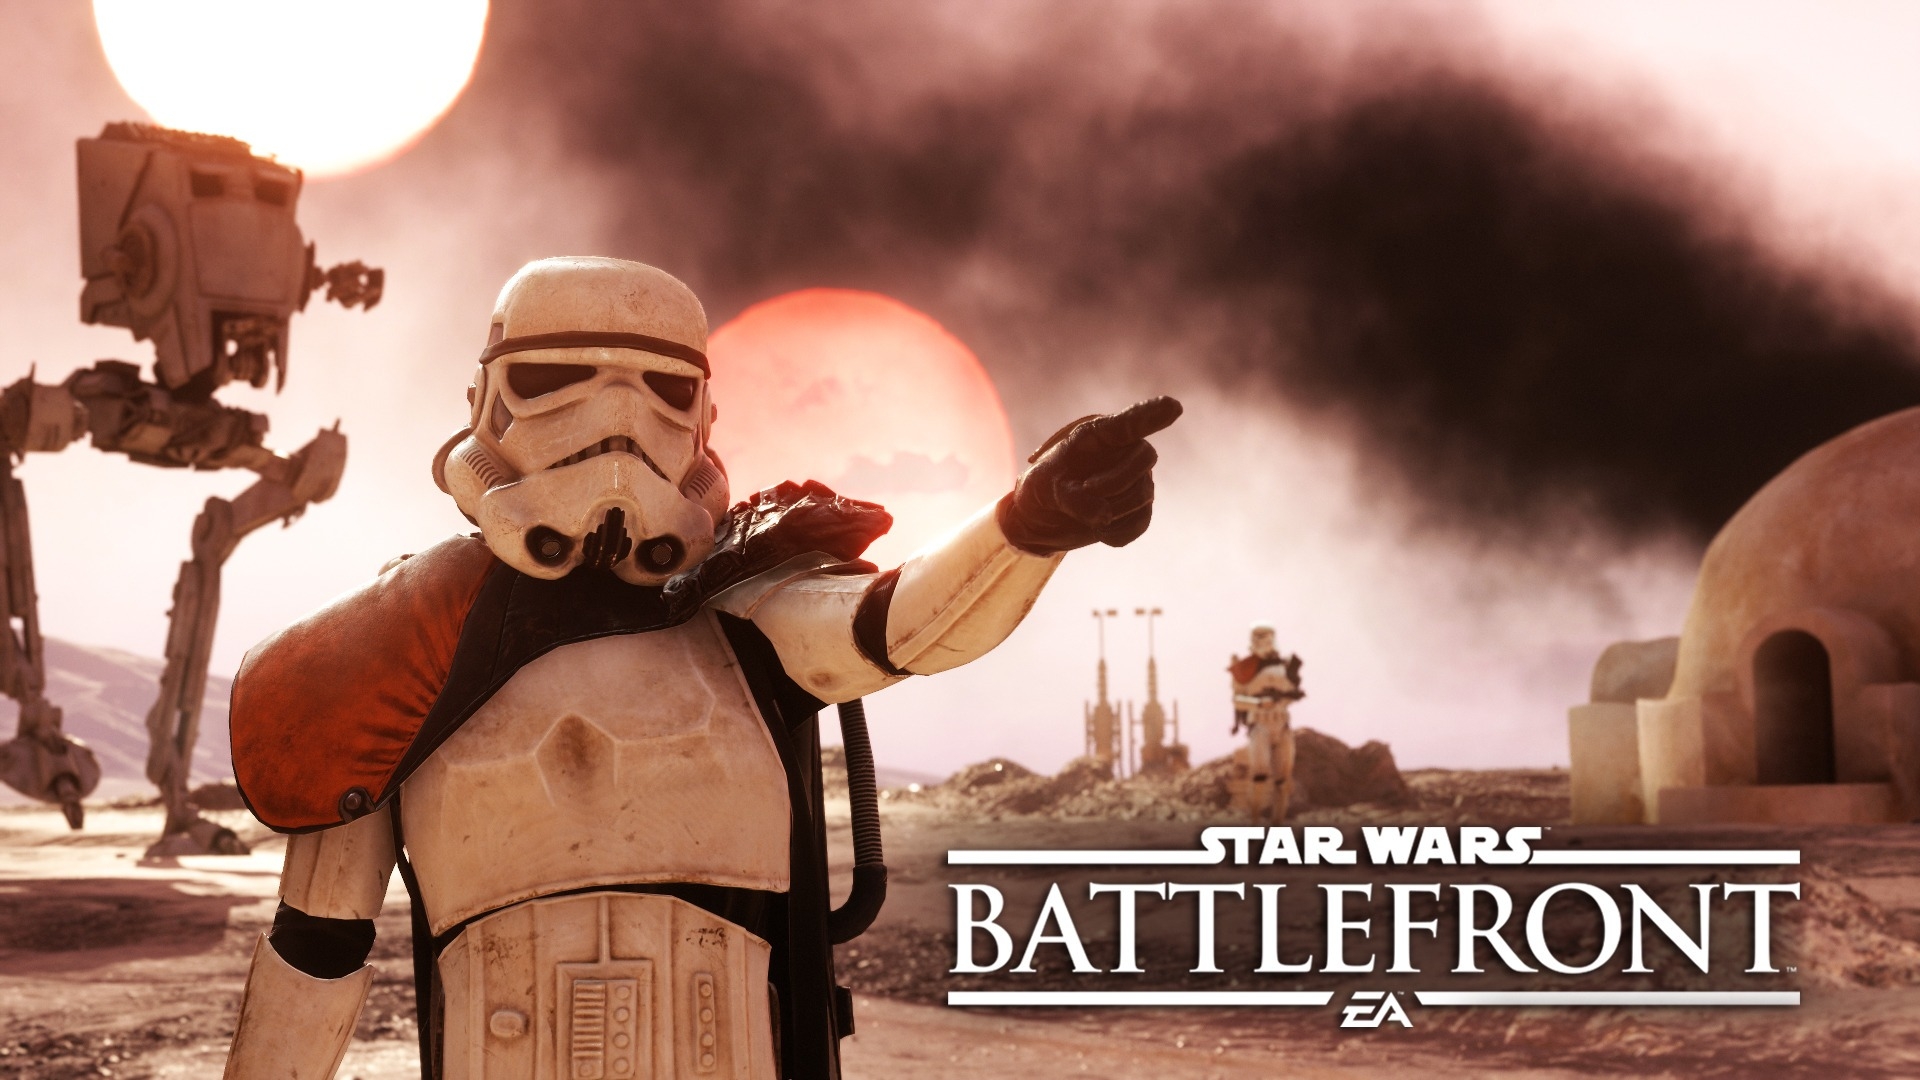 Star Wars Battlefront “khởi động” bằng trailer lối chơi hấp dẫn